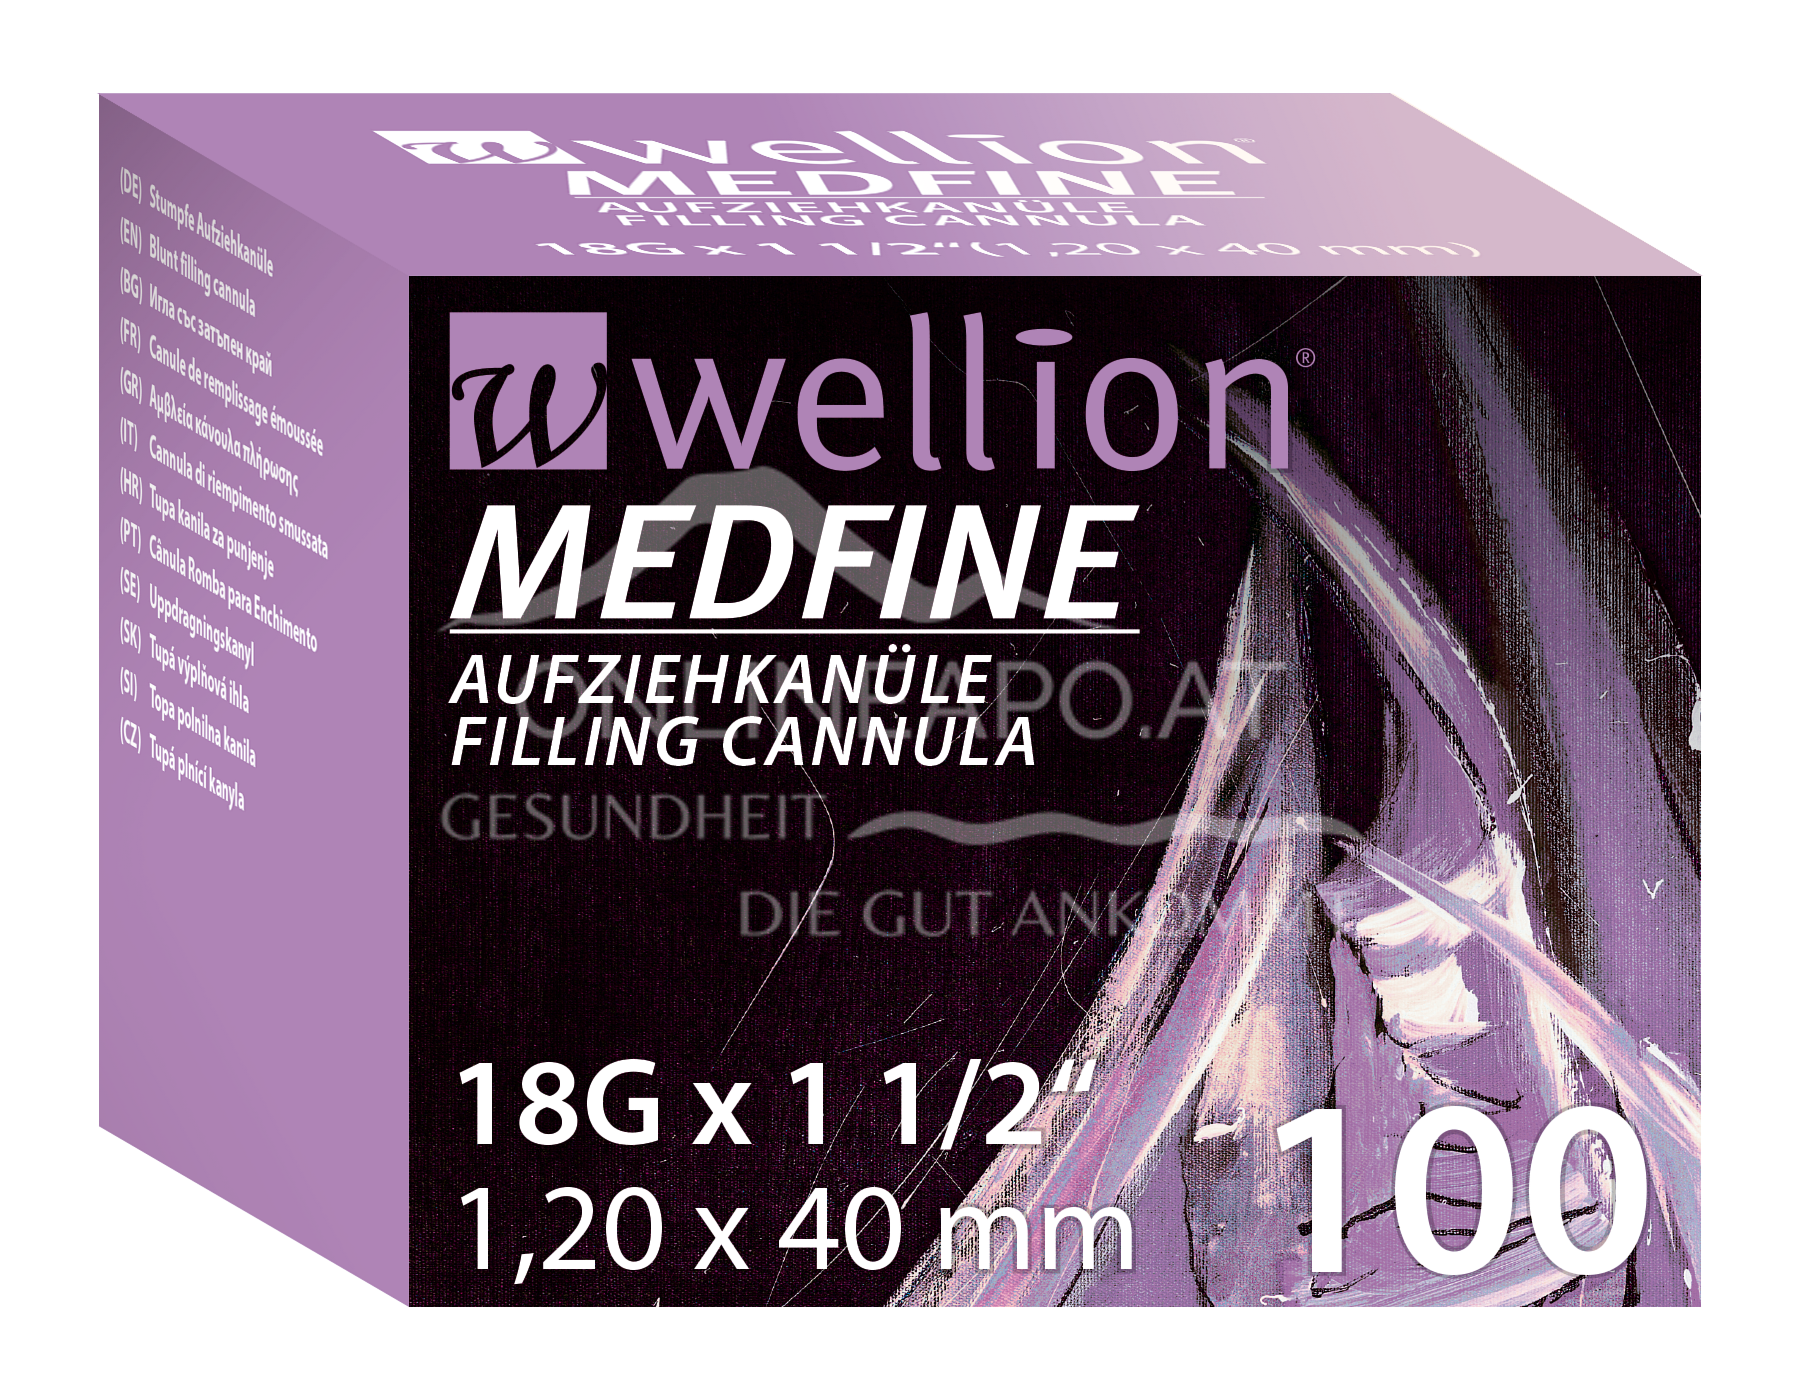 WELL23-18 Wellion MEDFINE Aufziehkanüle 18G x 1/2“, 1,20 x 40 mm